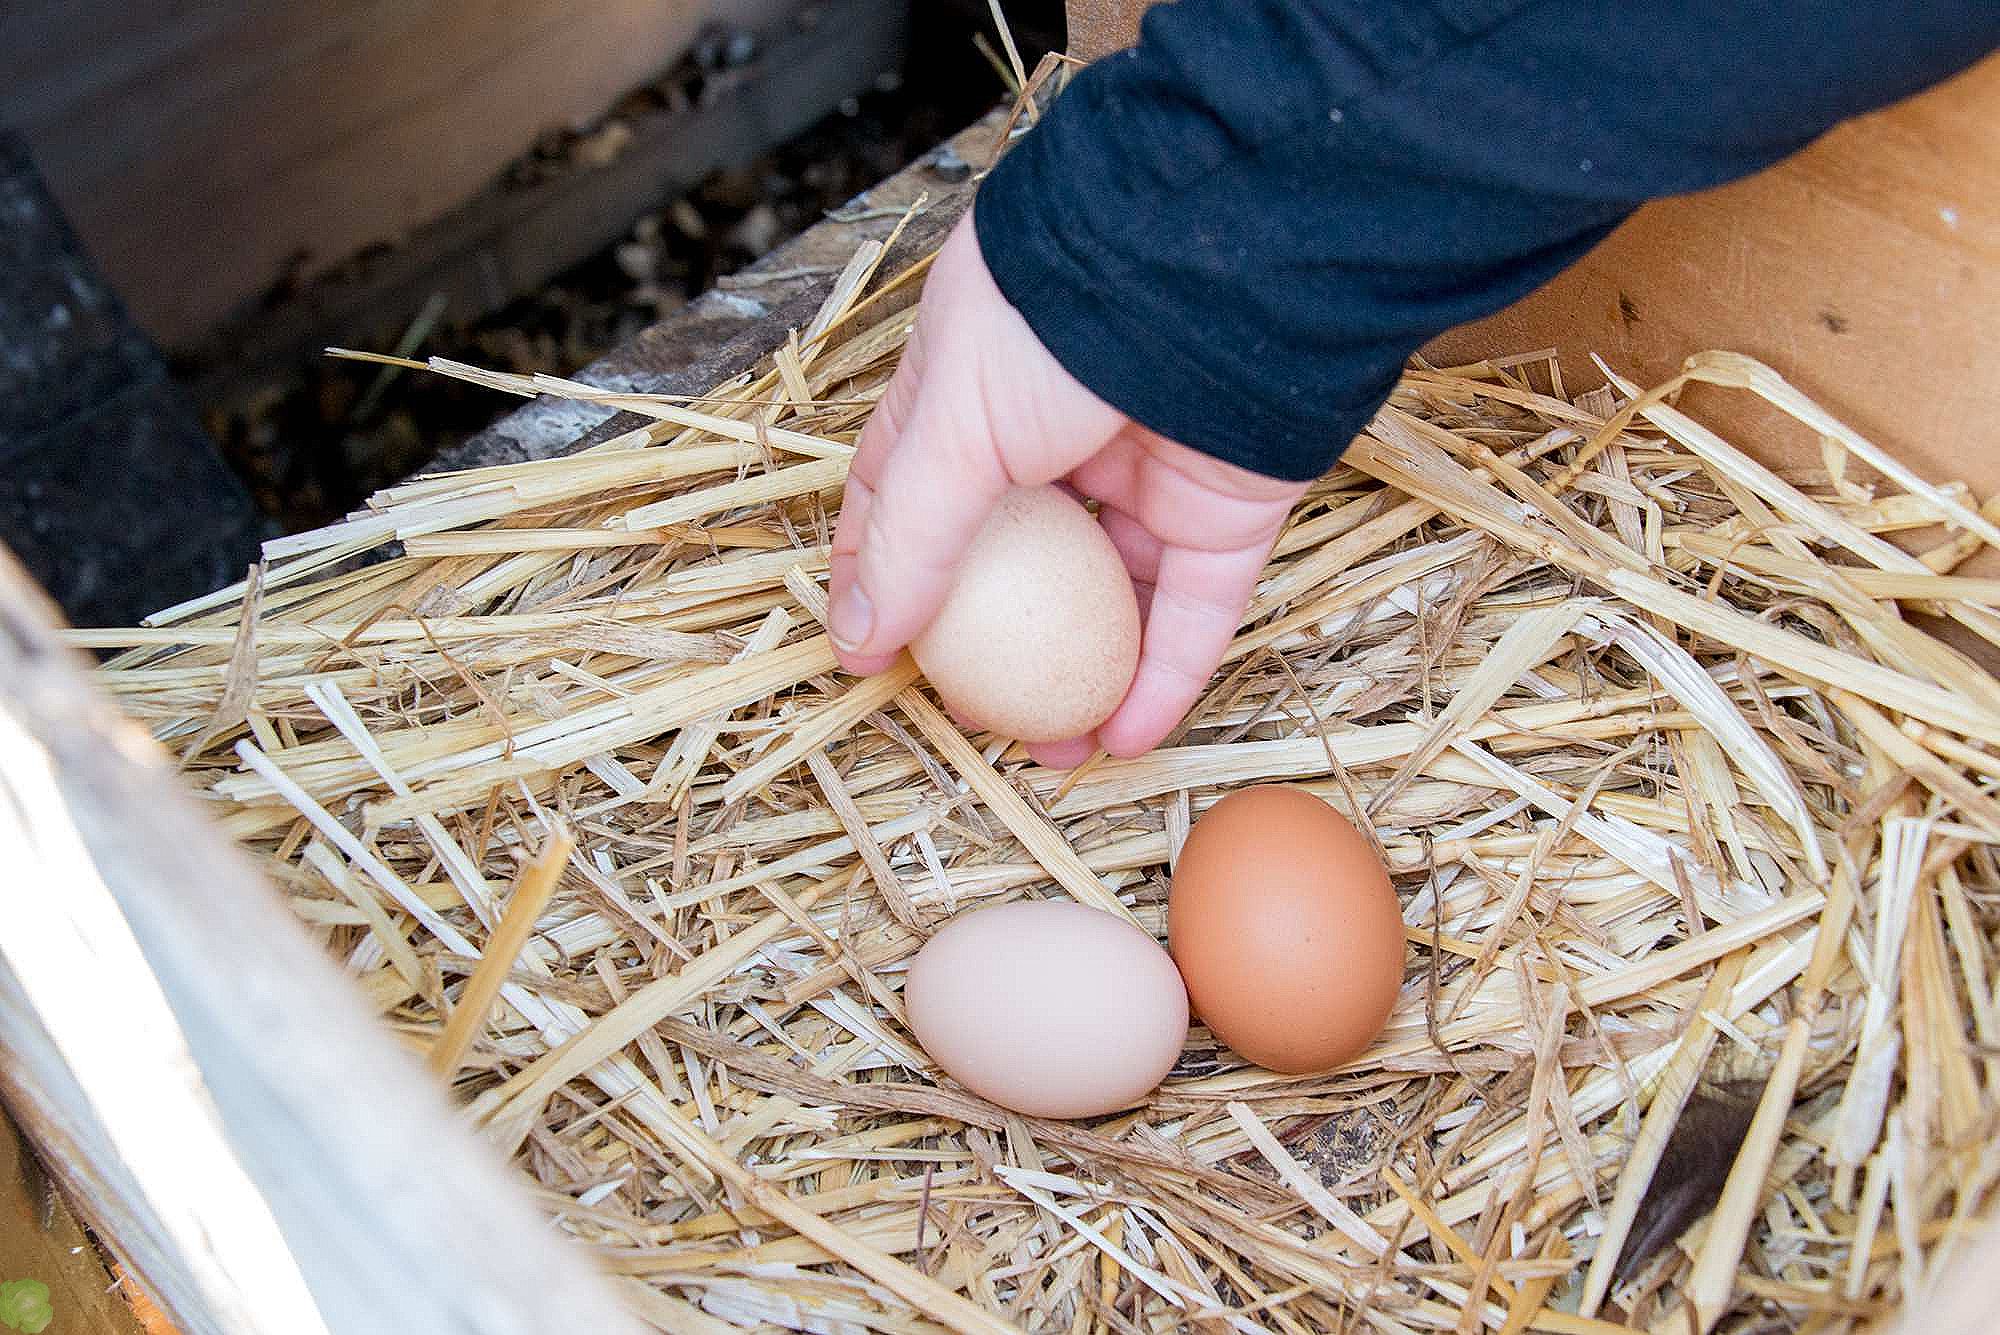 Курица села высиживать яйца зимой, что делать?